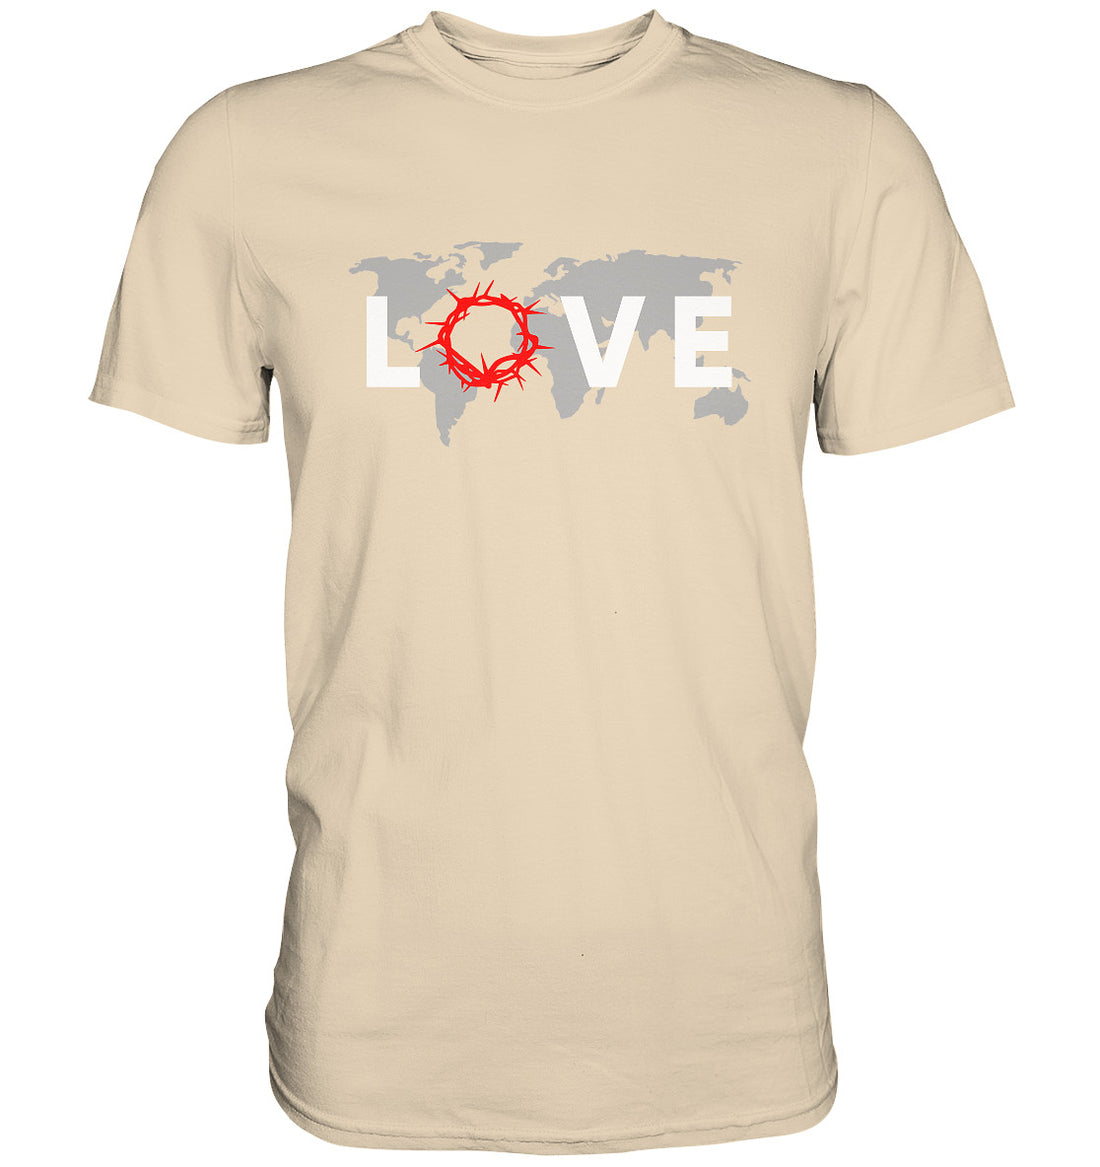 LOVE - WORLD - Premium Shirt